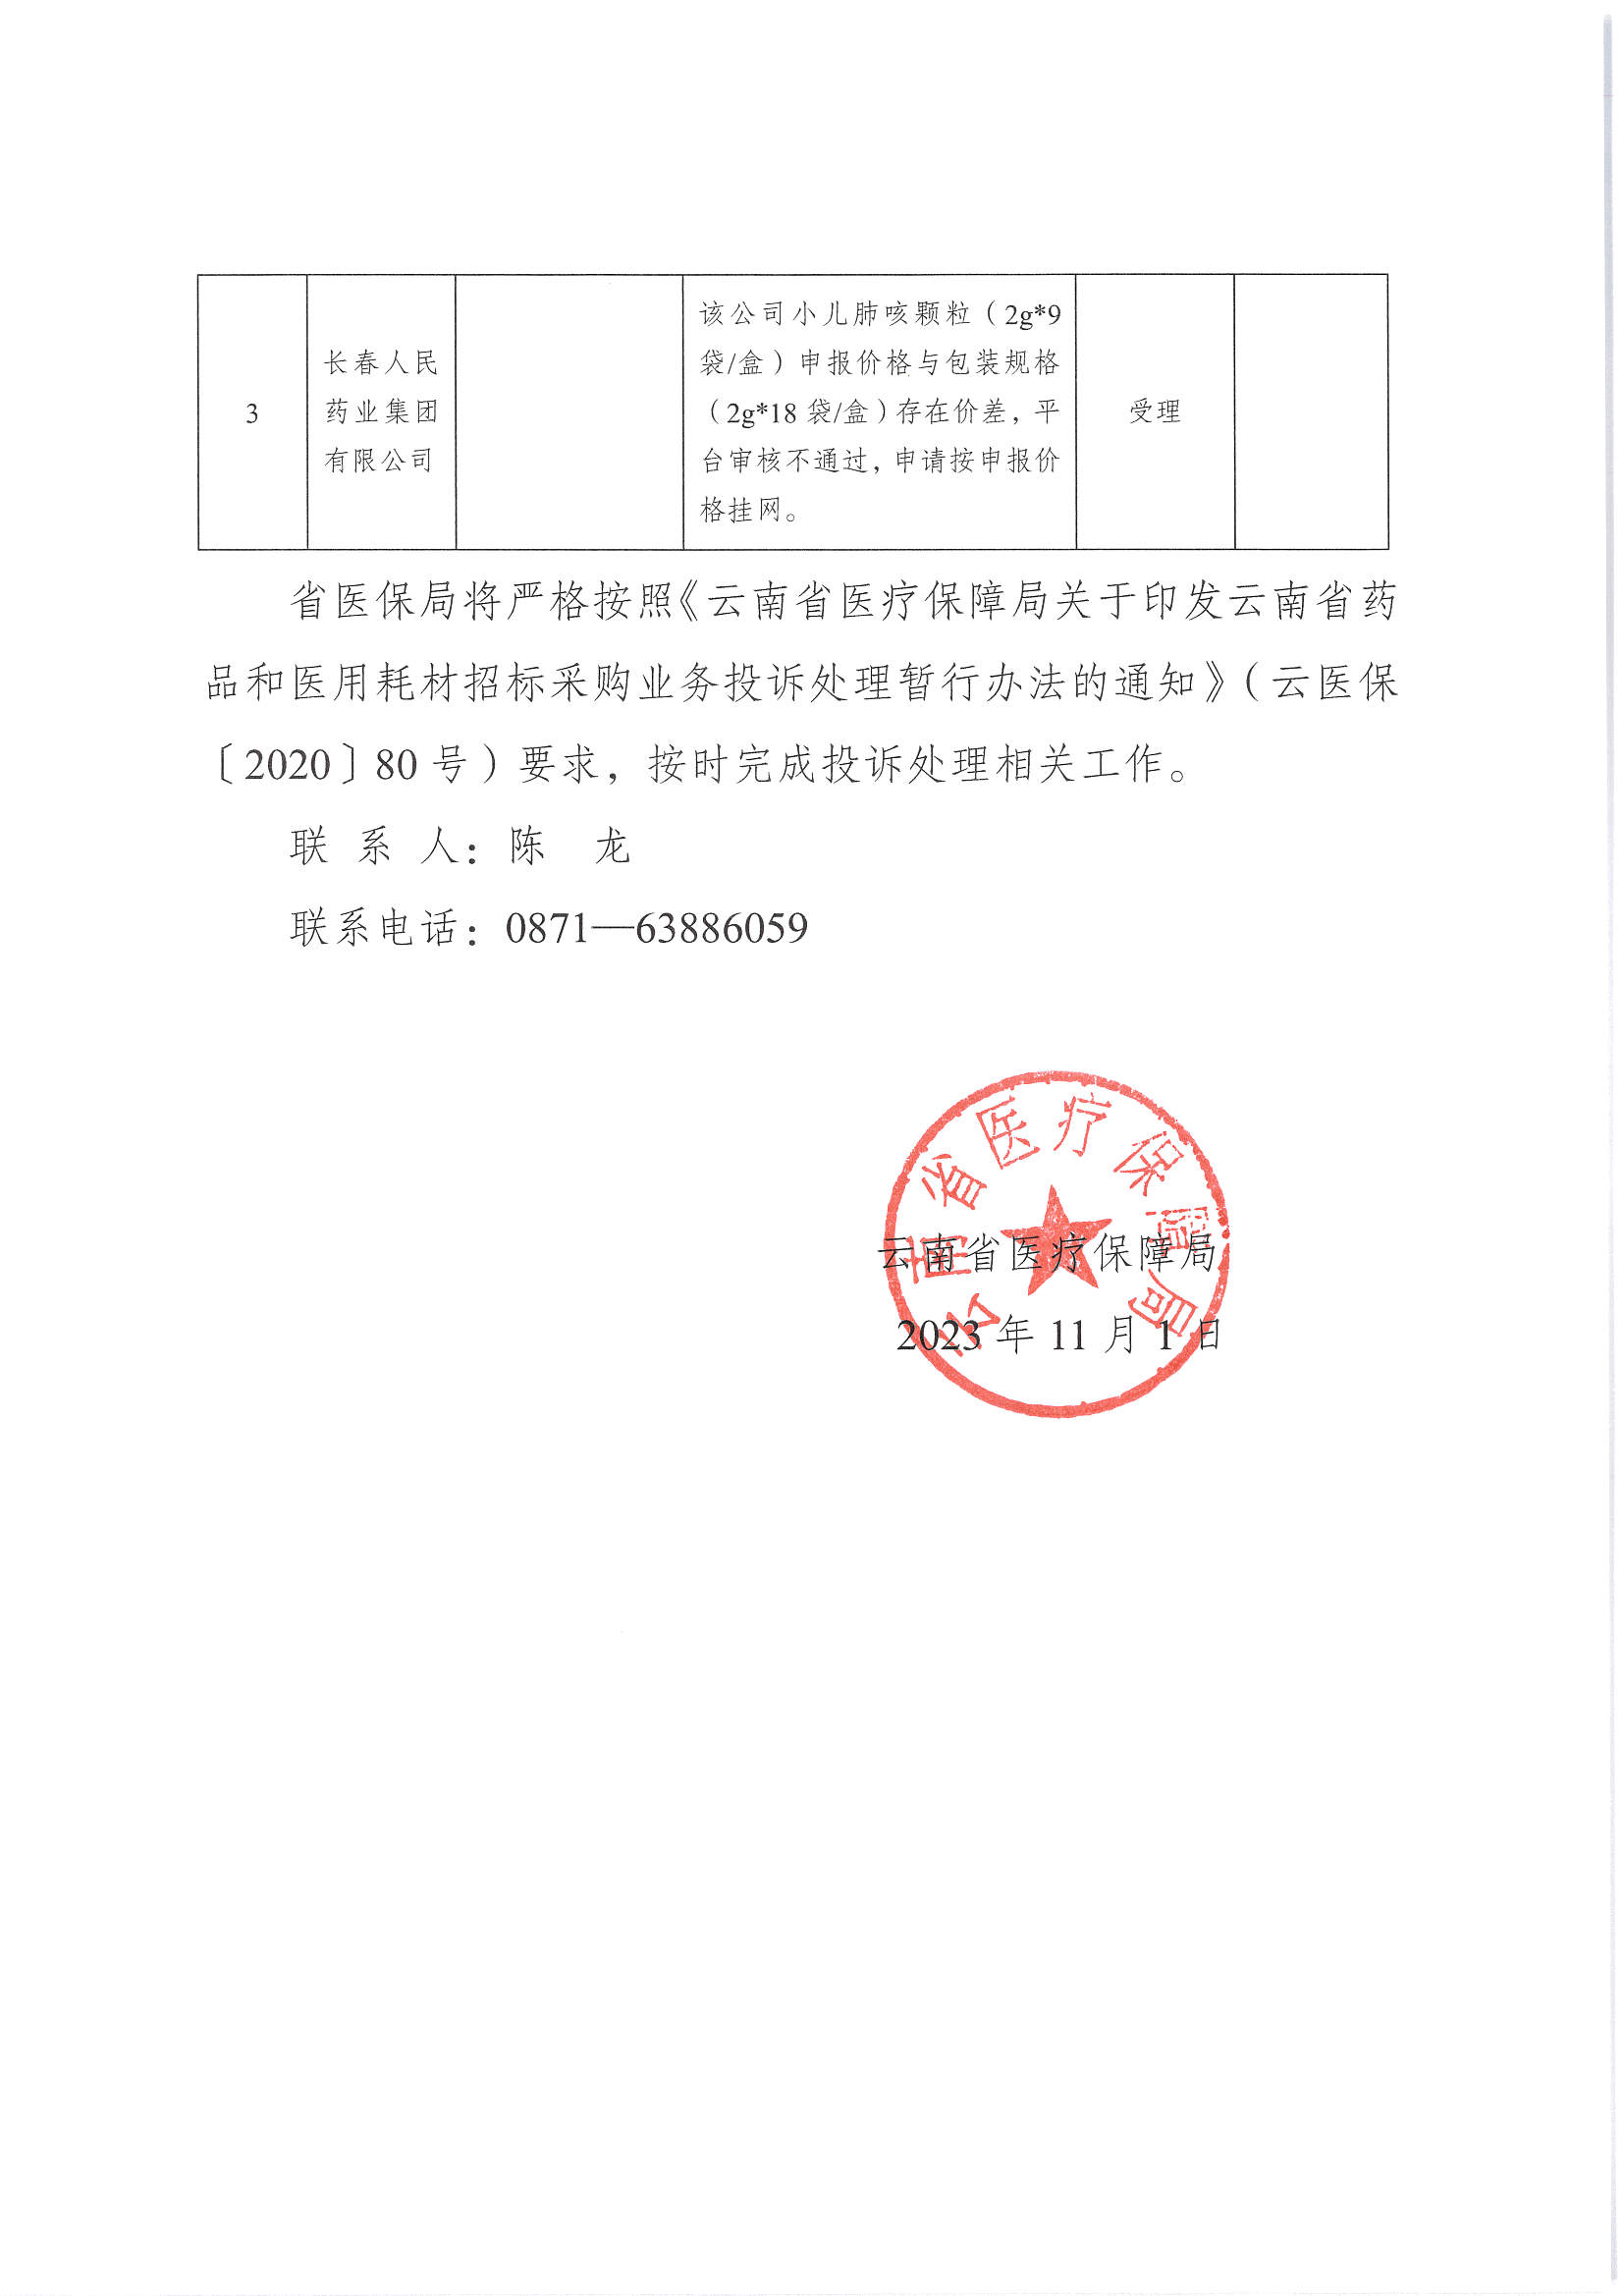 云南省医疗保障局关于2023年有关申诉和质疑结果投诉接收情况的函_页面_2.jpg